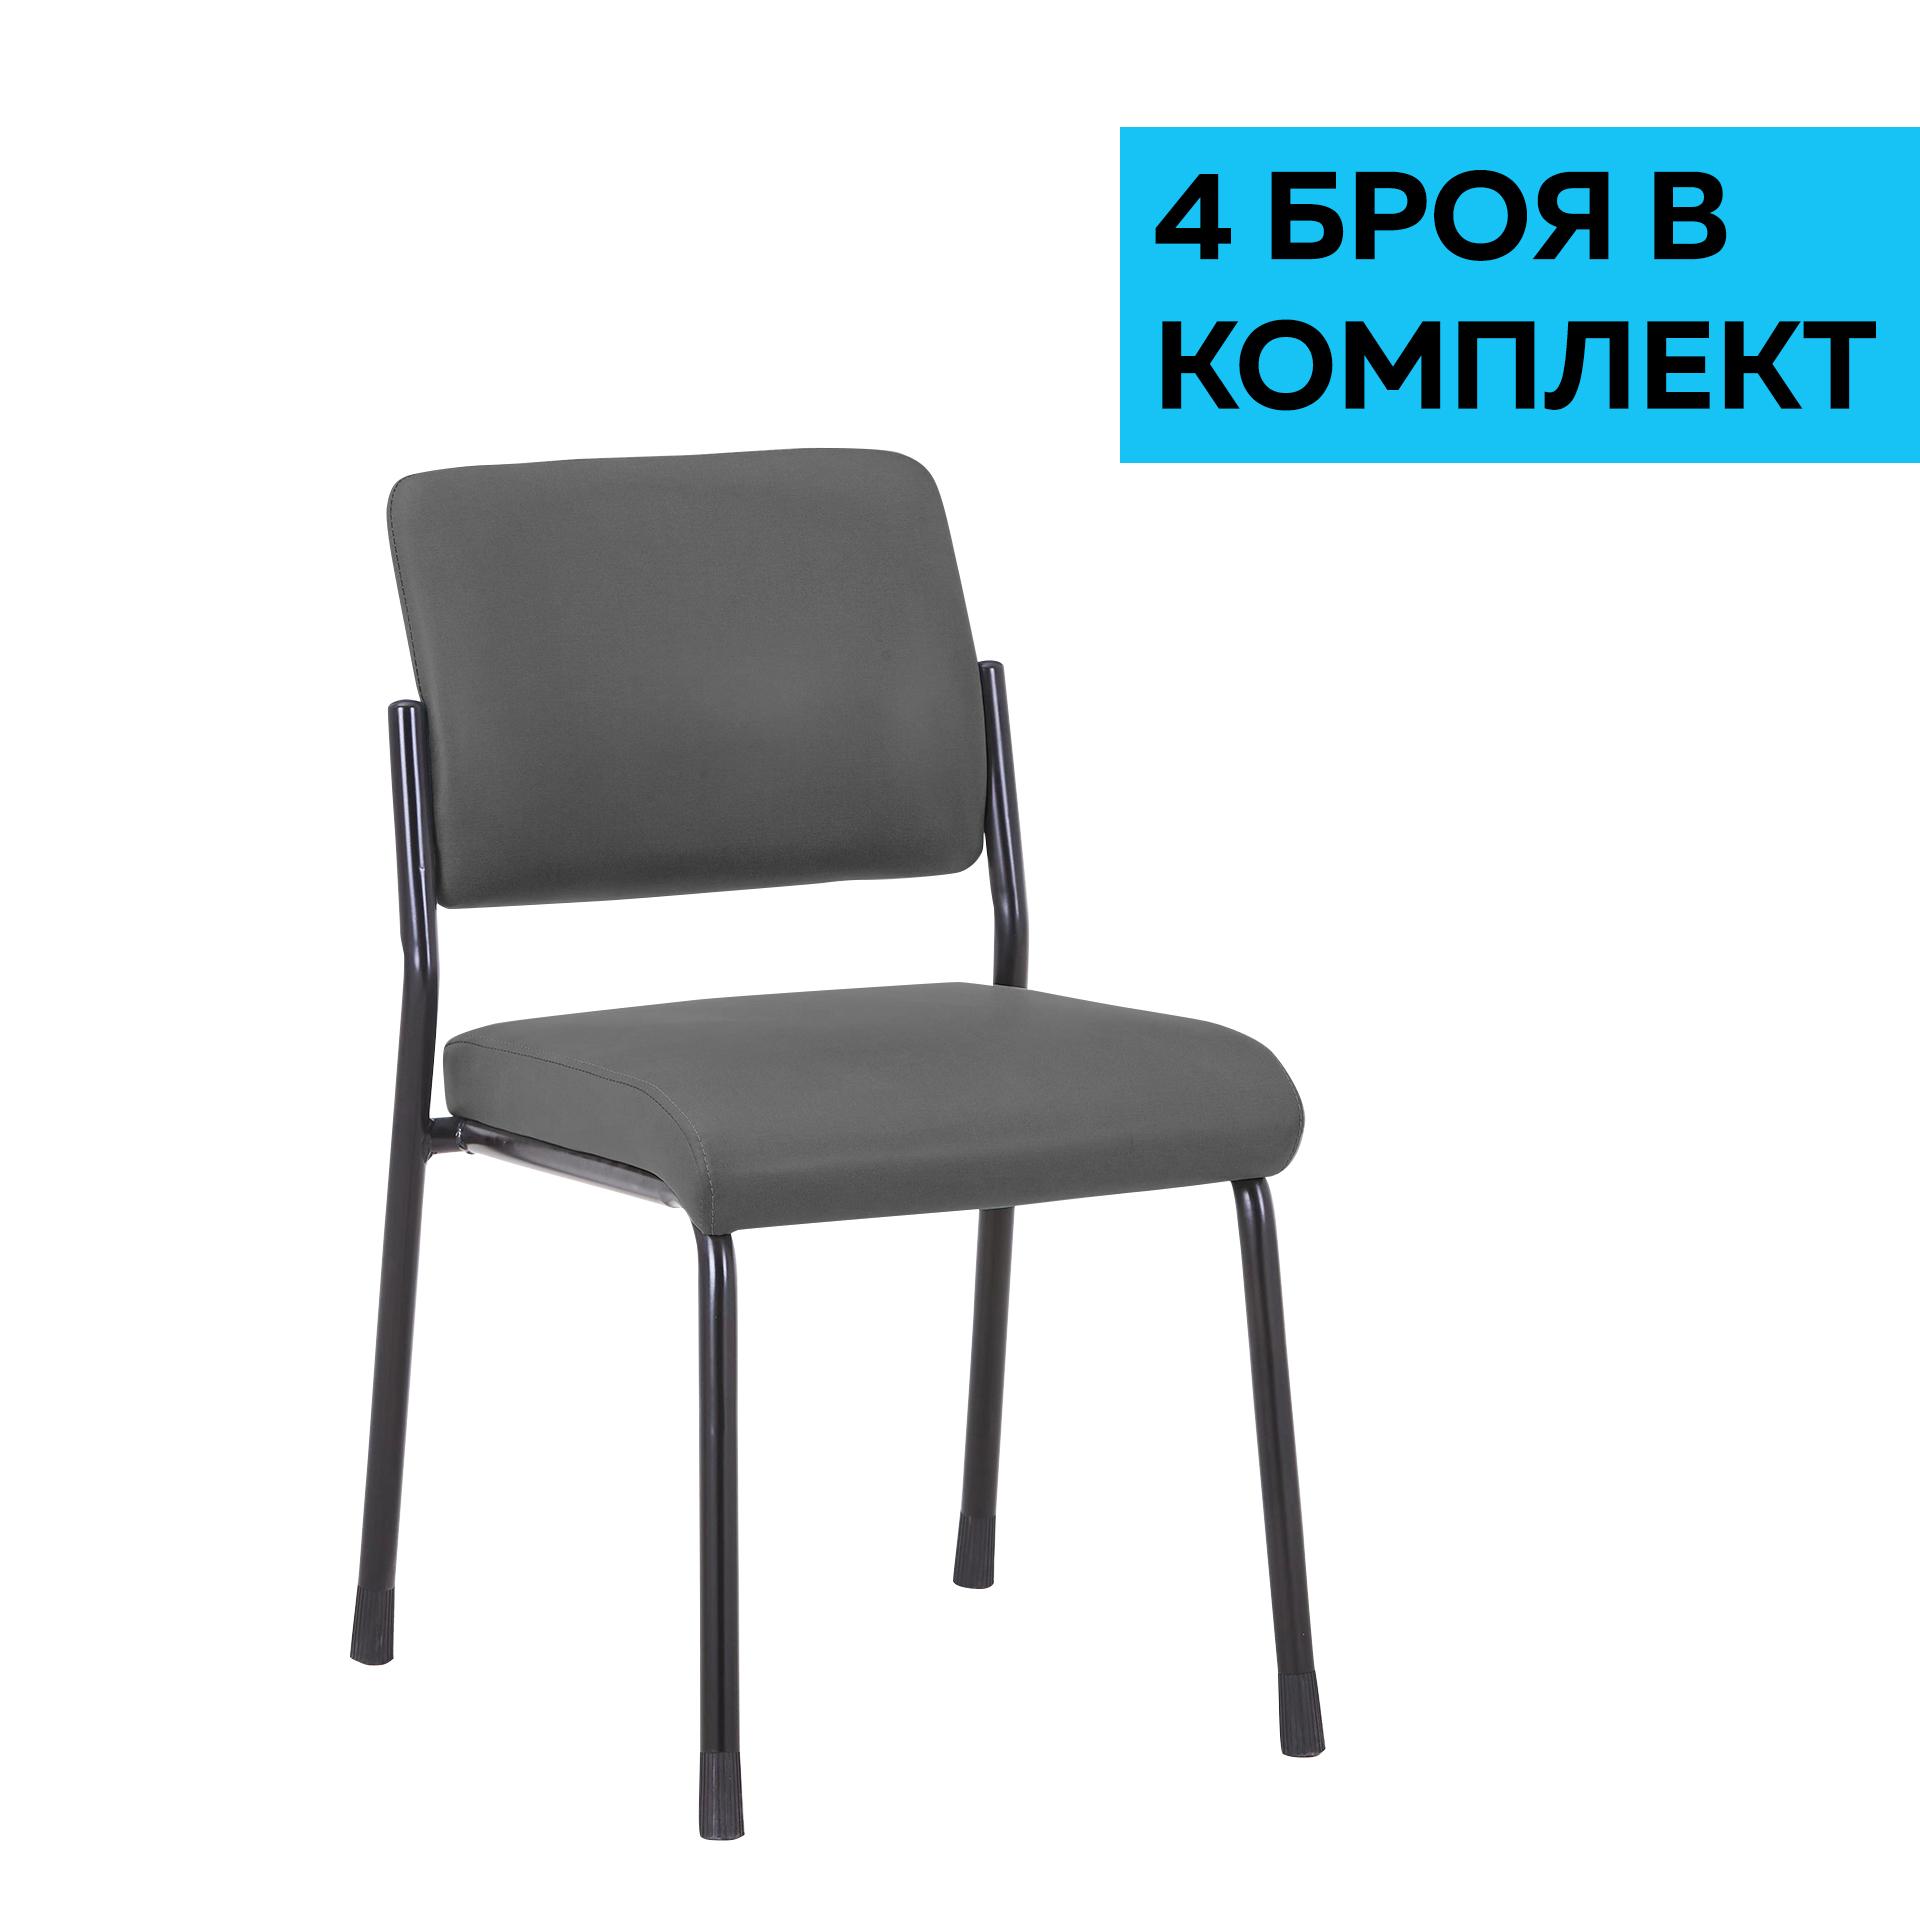 RFG Посетителски стол Solid M, екокожа, сив, 4 броя в комплект